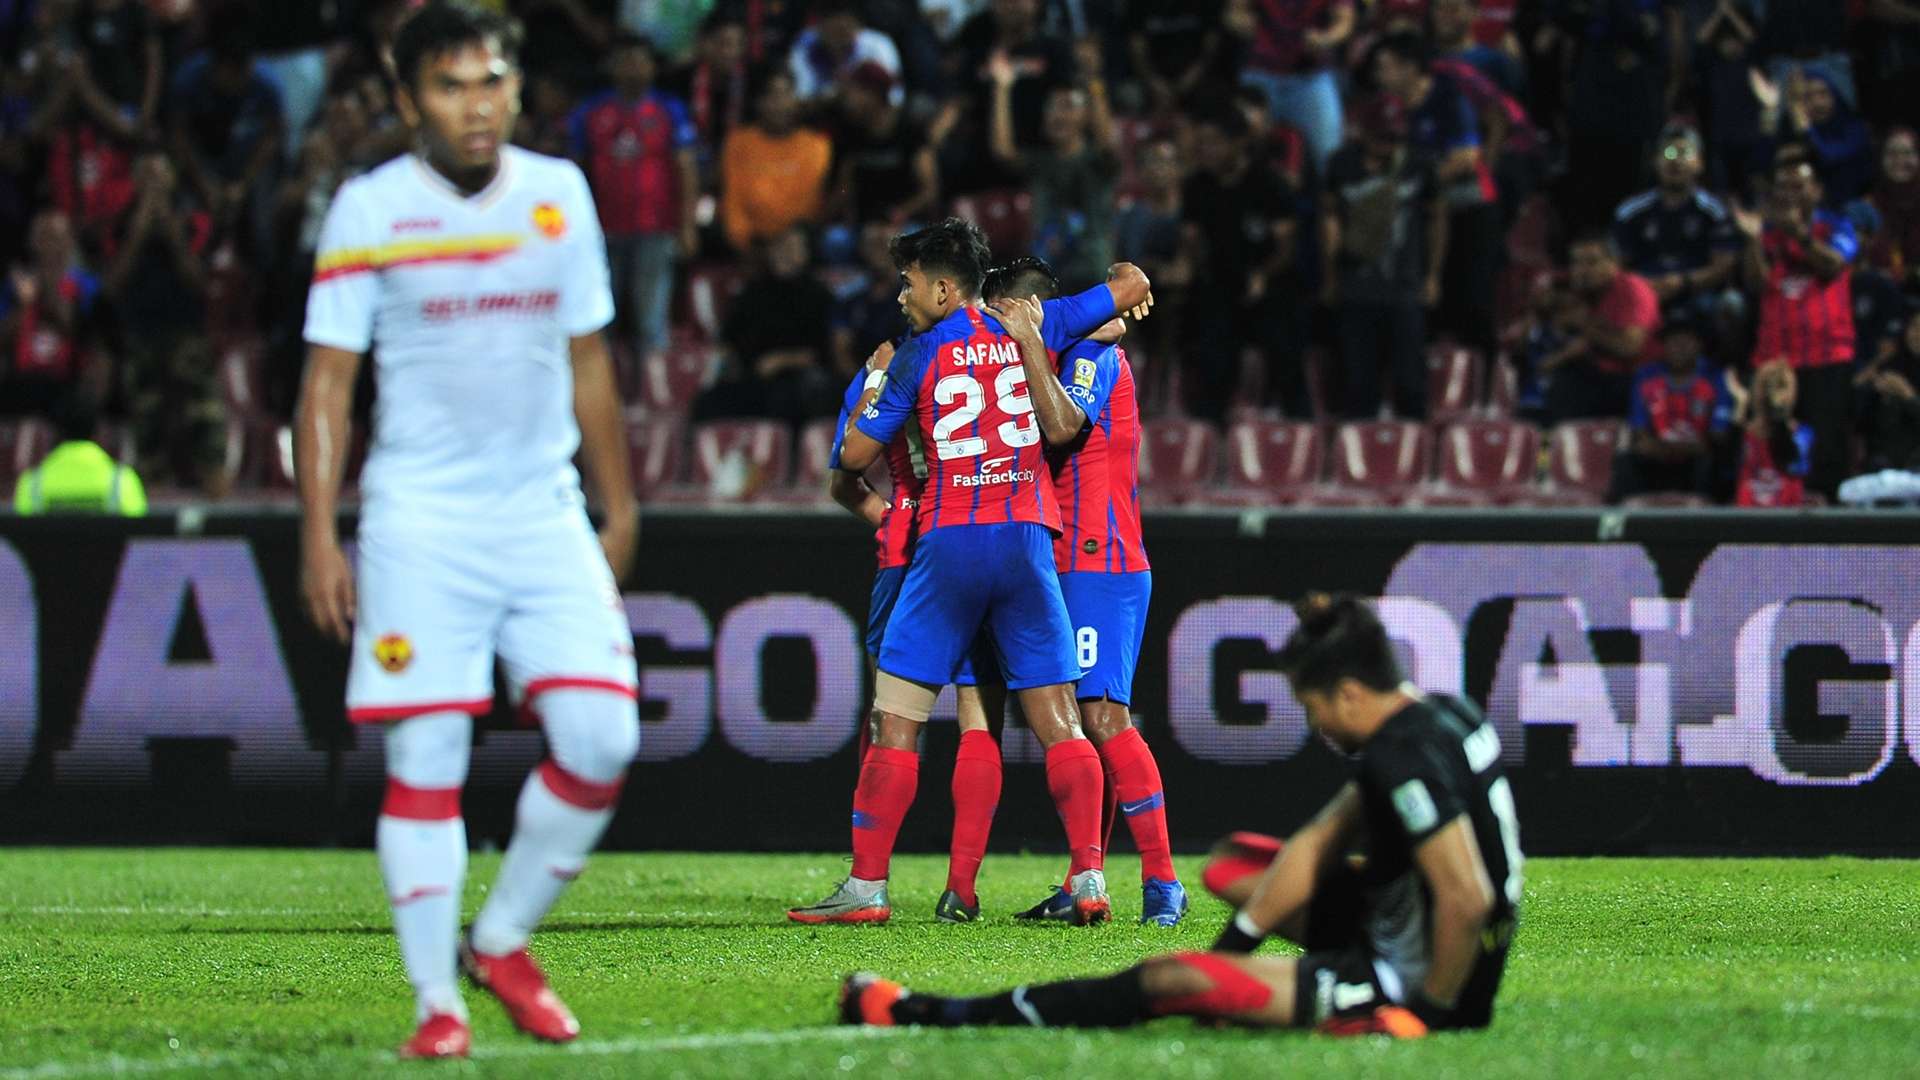 Johor Darul Ta'zim v Selangor, Malaysia Super League, 19 Jun 2019